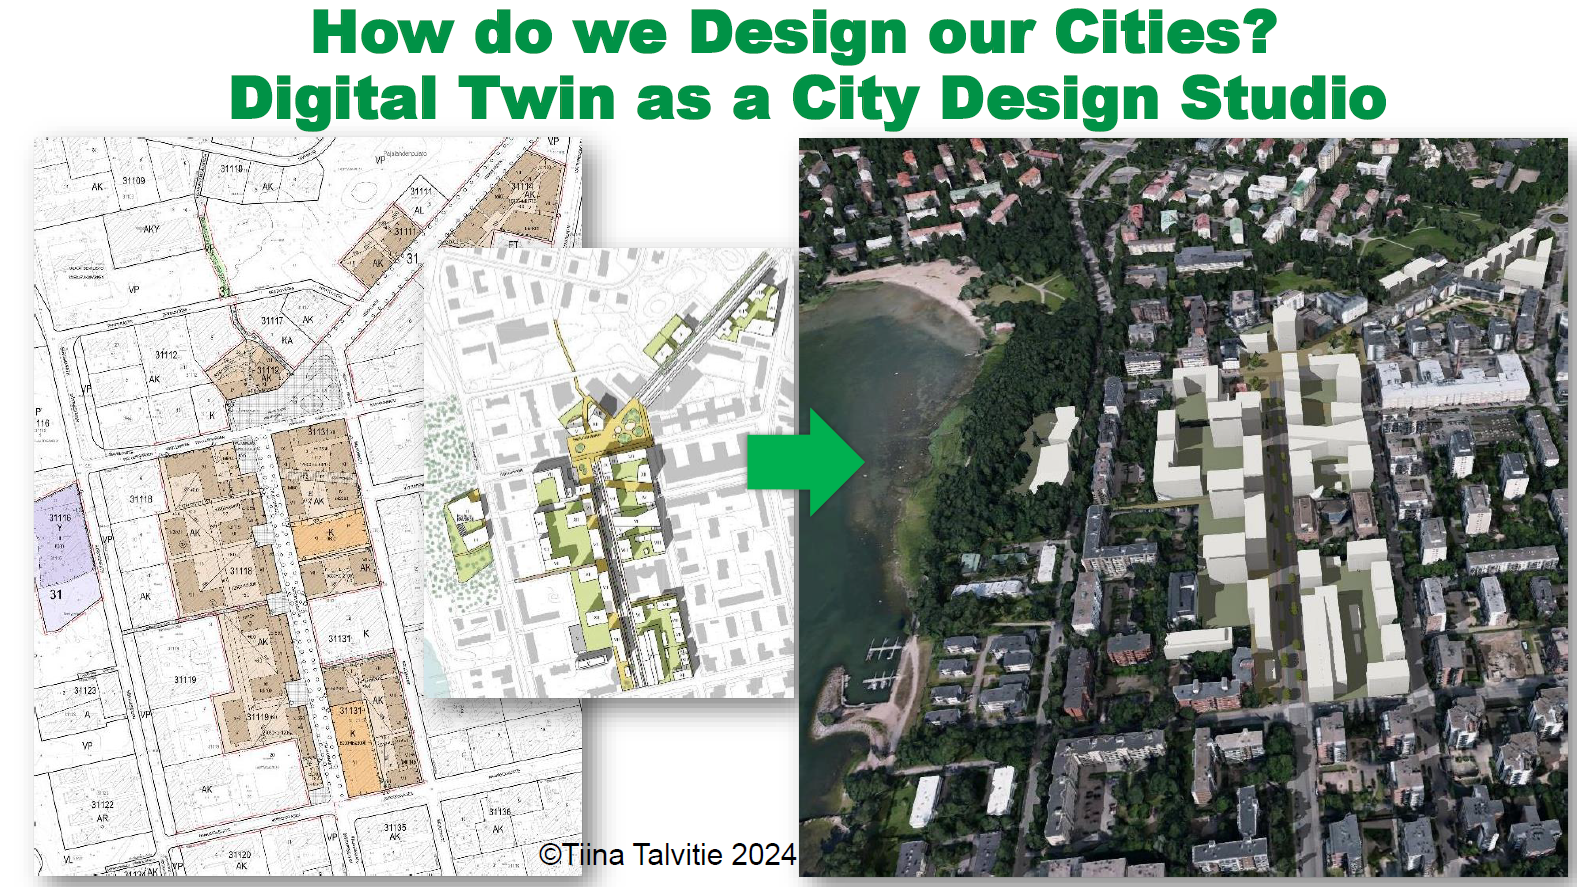 Kuvassa havainnollistetaan pohjapiirrustusten siirtäminen kaksiuloitteisesta karttanäkymästä 3D-karttanäkymään, jota suunnittelijat voivat hyödyntää kaupunkisuunnittelussa.